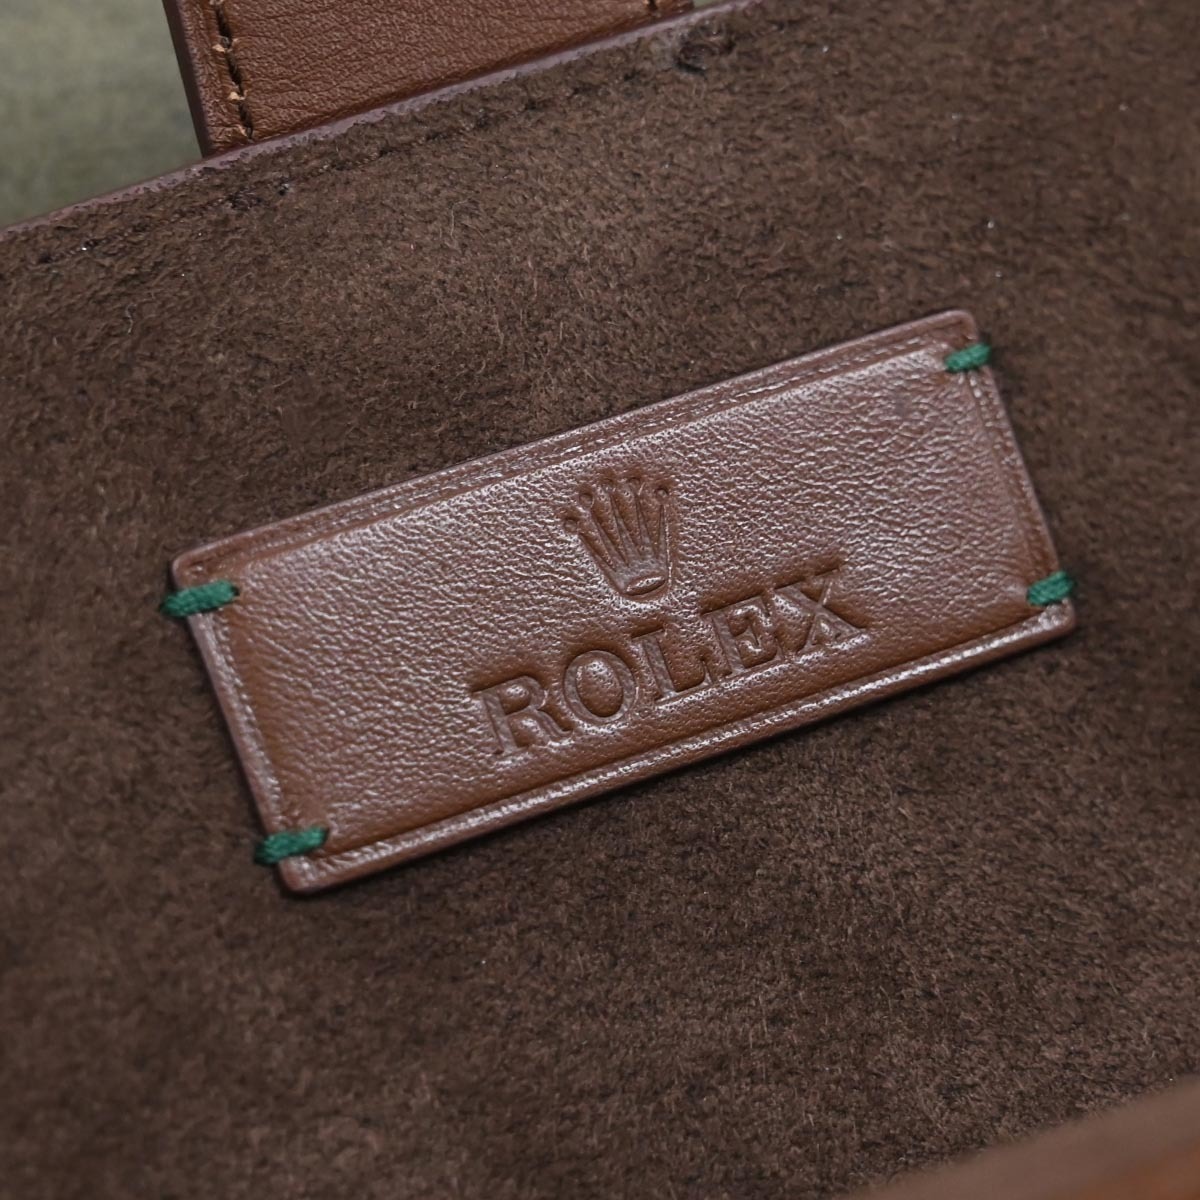  подлинный товар новый товар Rolex высшее редкий наручные часы несколько место хранения для все кожа часы багажник часы кейс переносная сумка сохранение с ящиком ROLEX